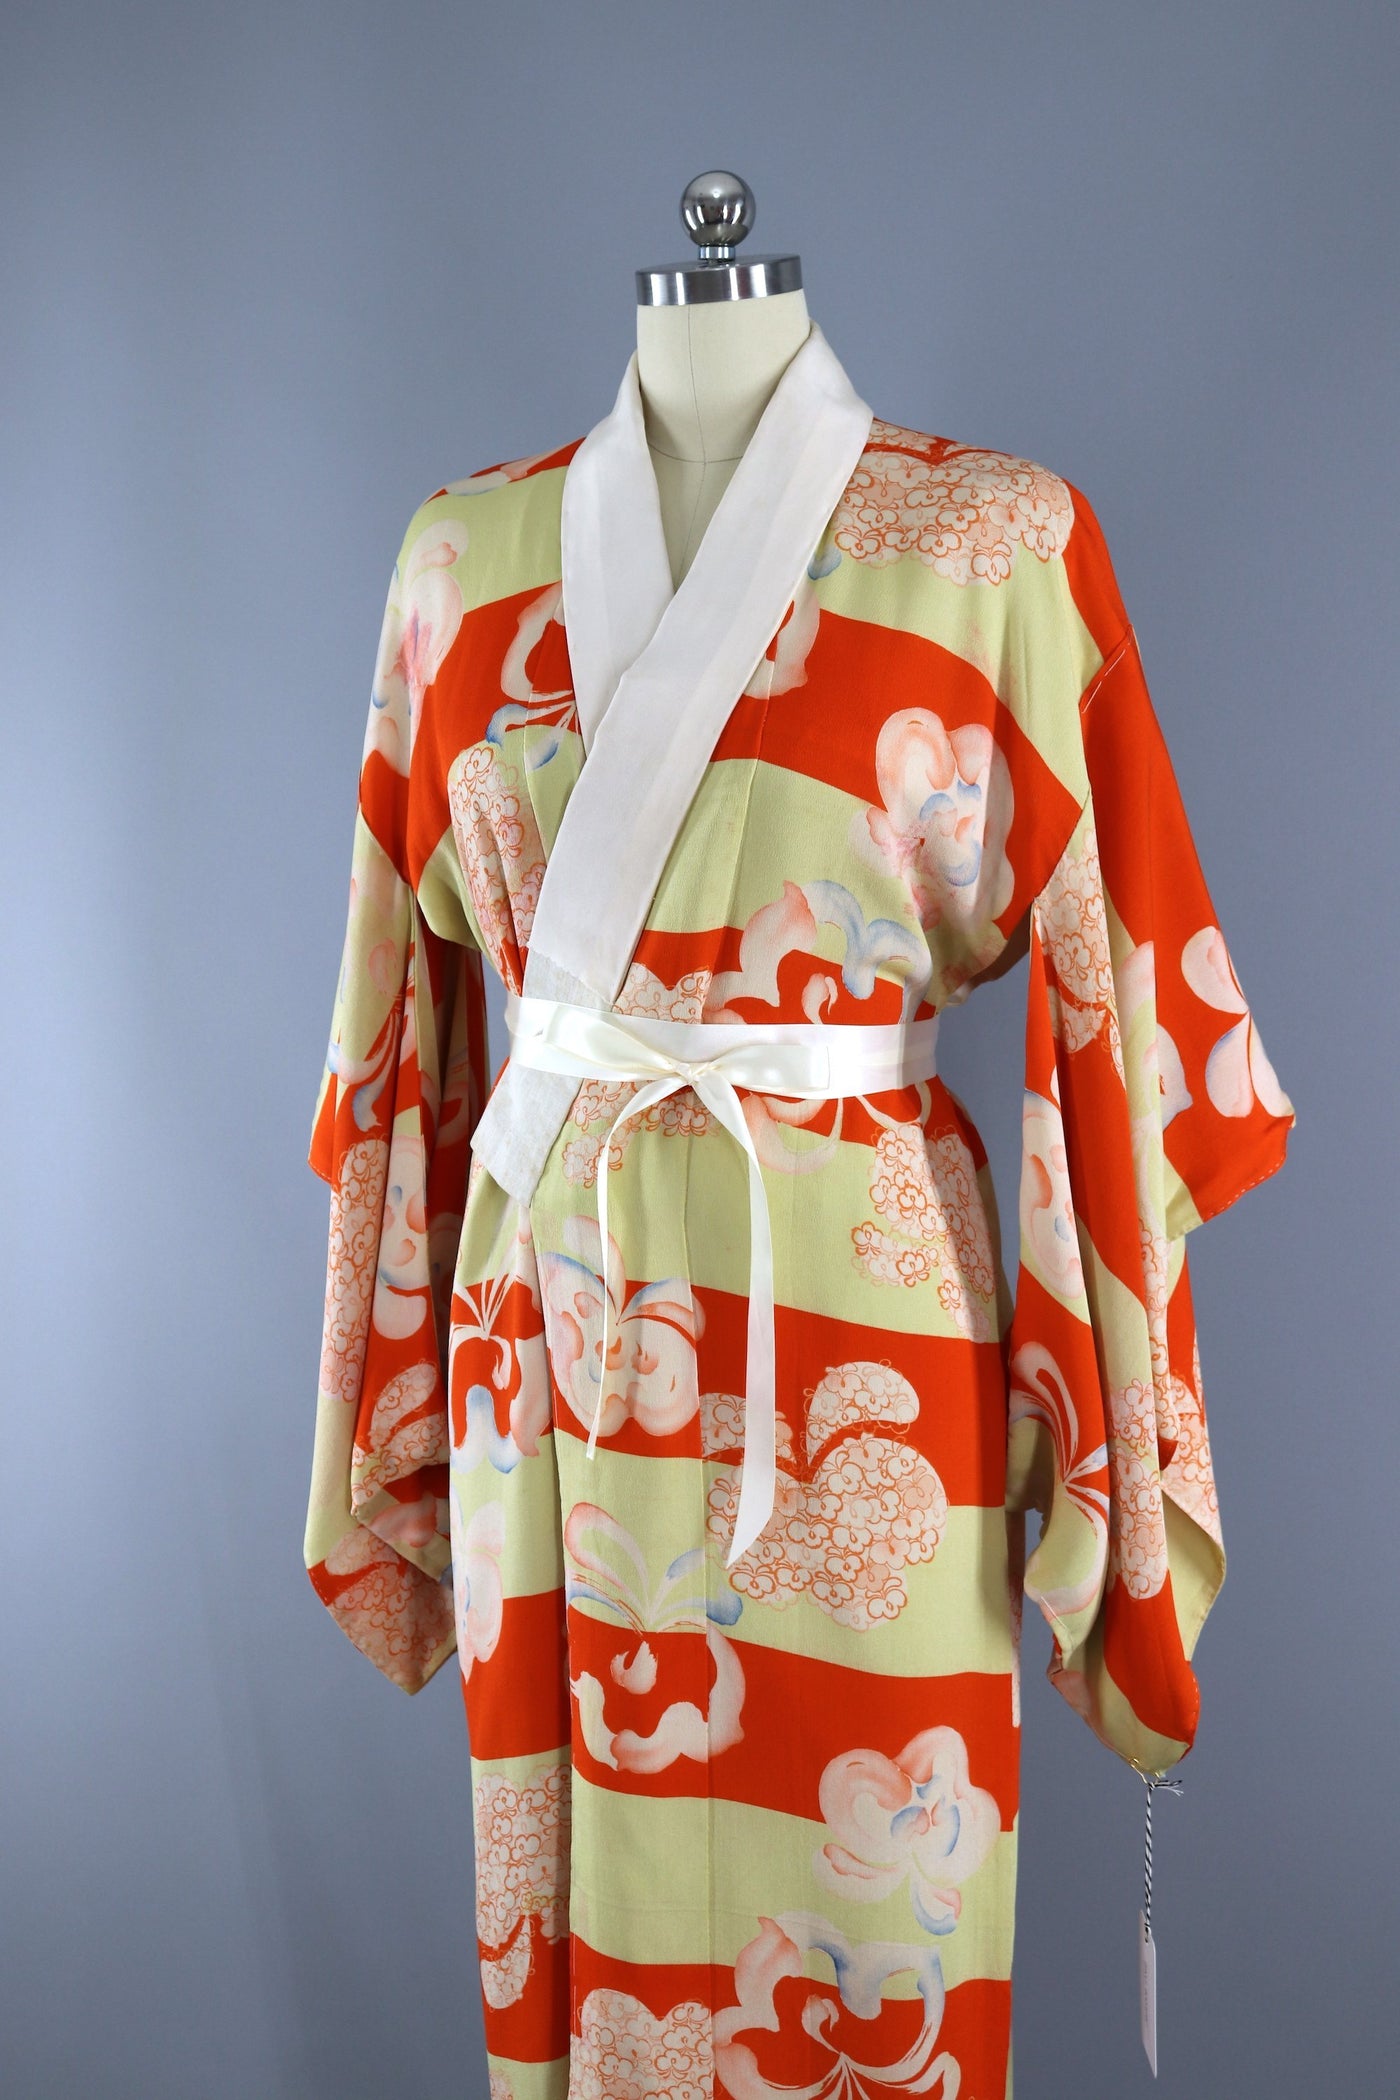 Vintage 1920s 1930s Silk Kimono Robe / Orange & Yellow Floral Print Stripes - ThisBlueBird